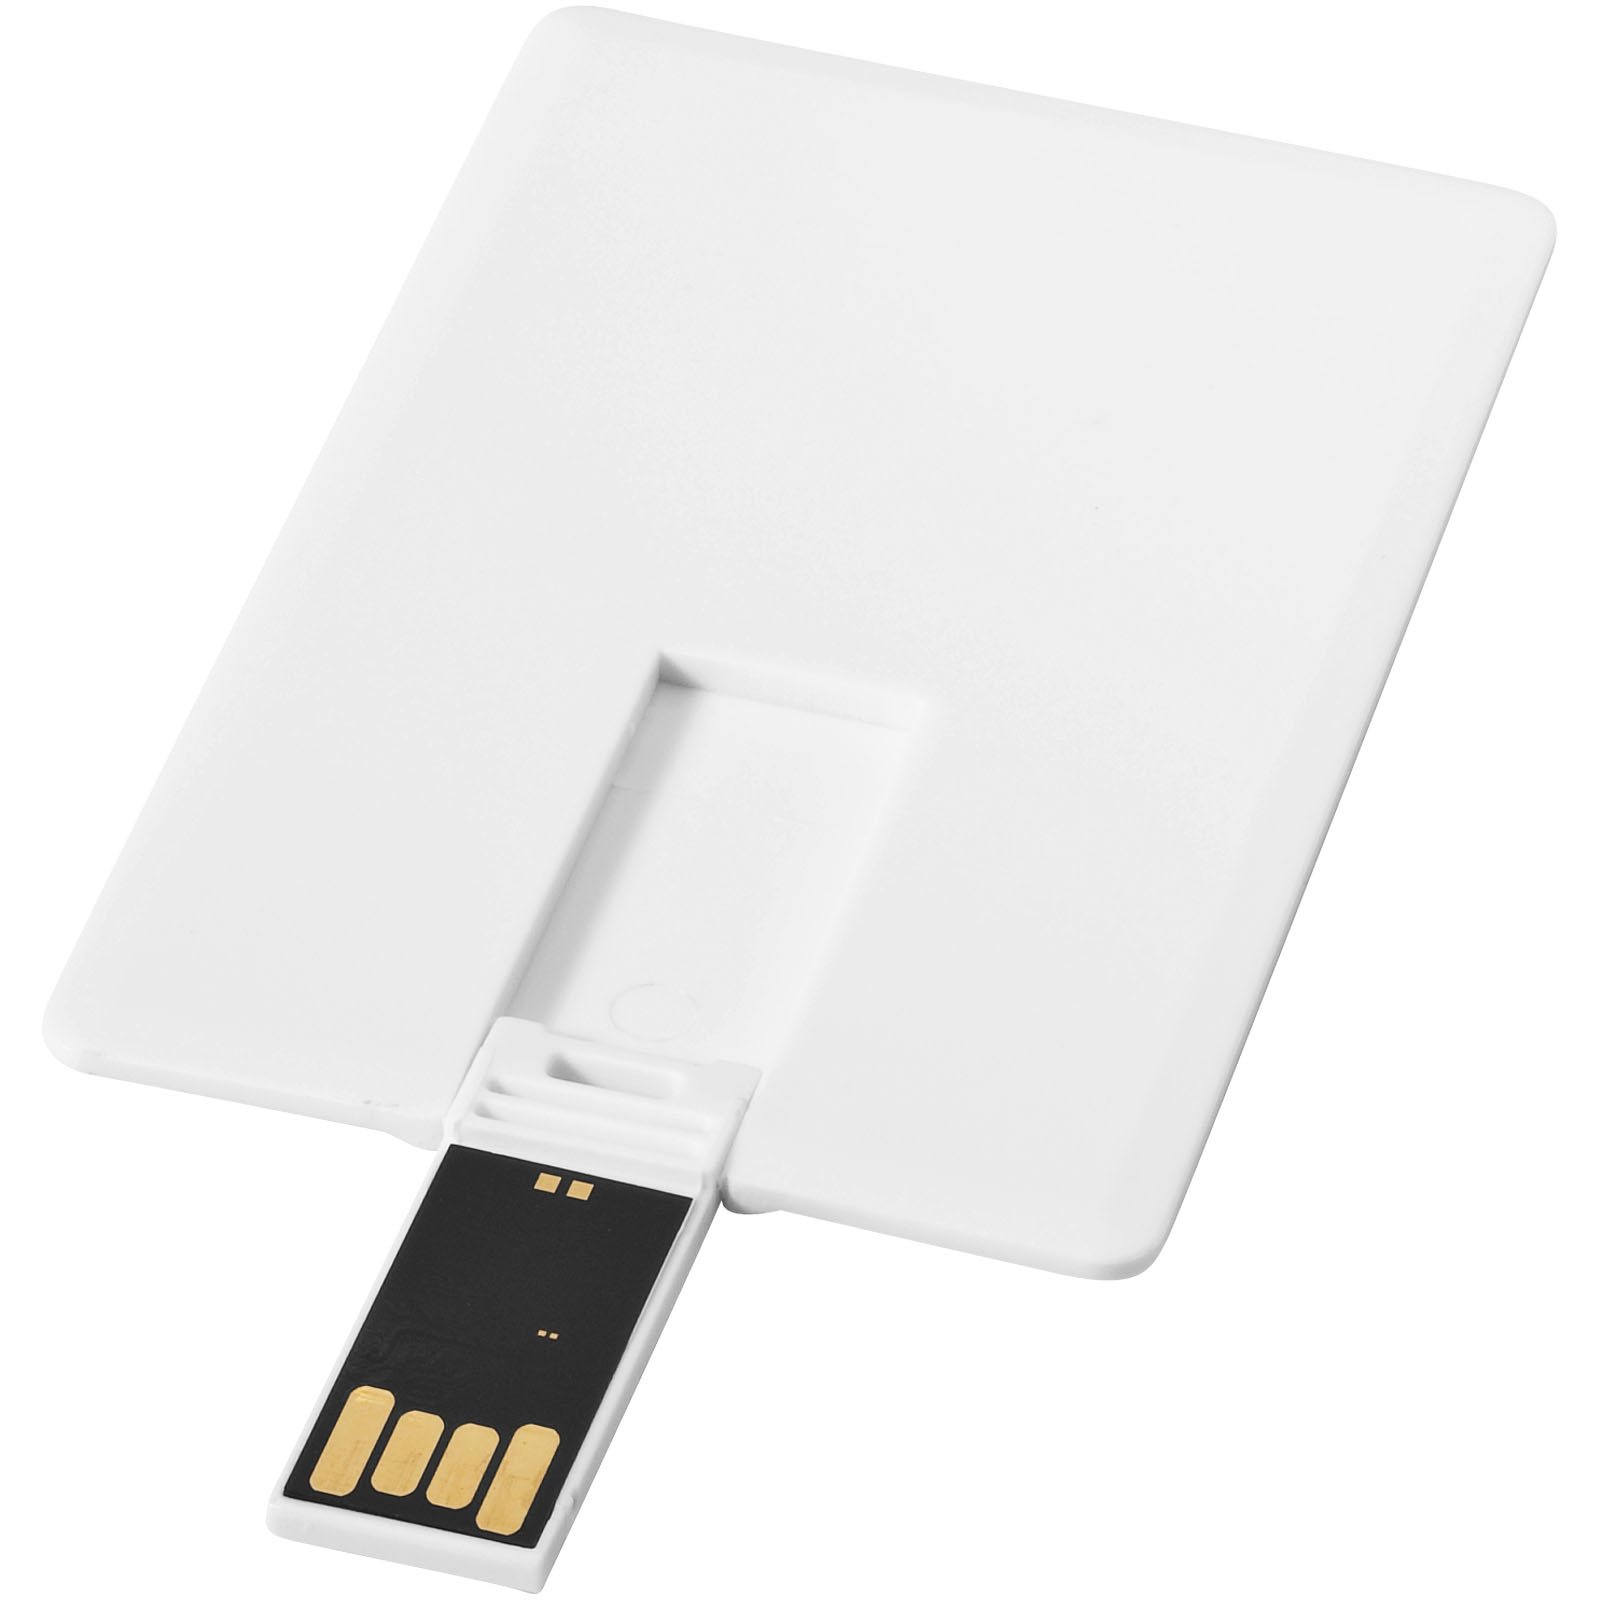 USB Flash Drives - Slim card-shaped 4GB USB flash drive